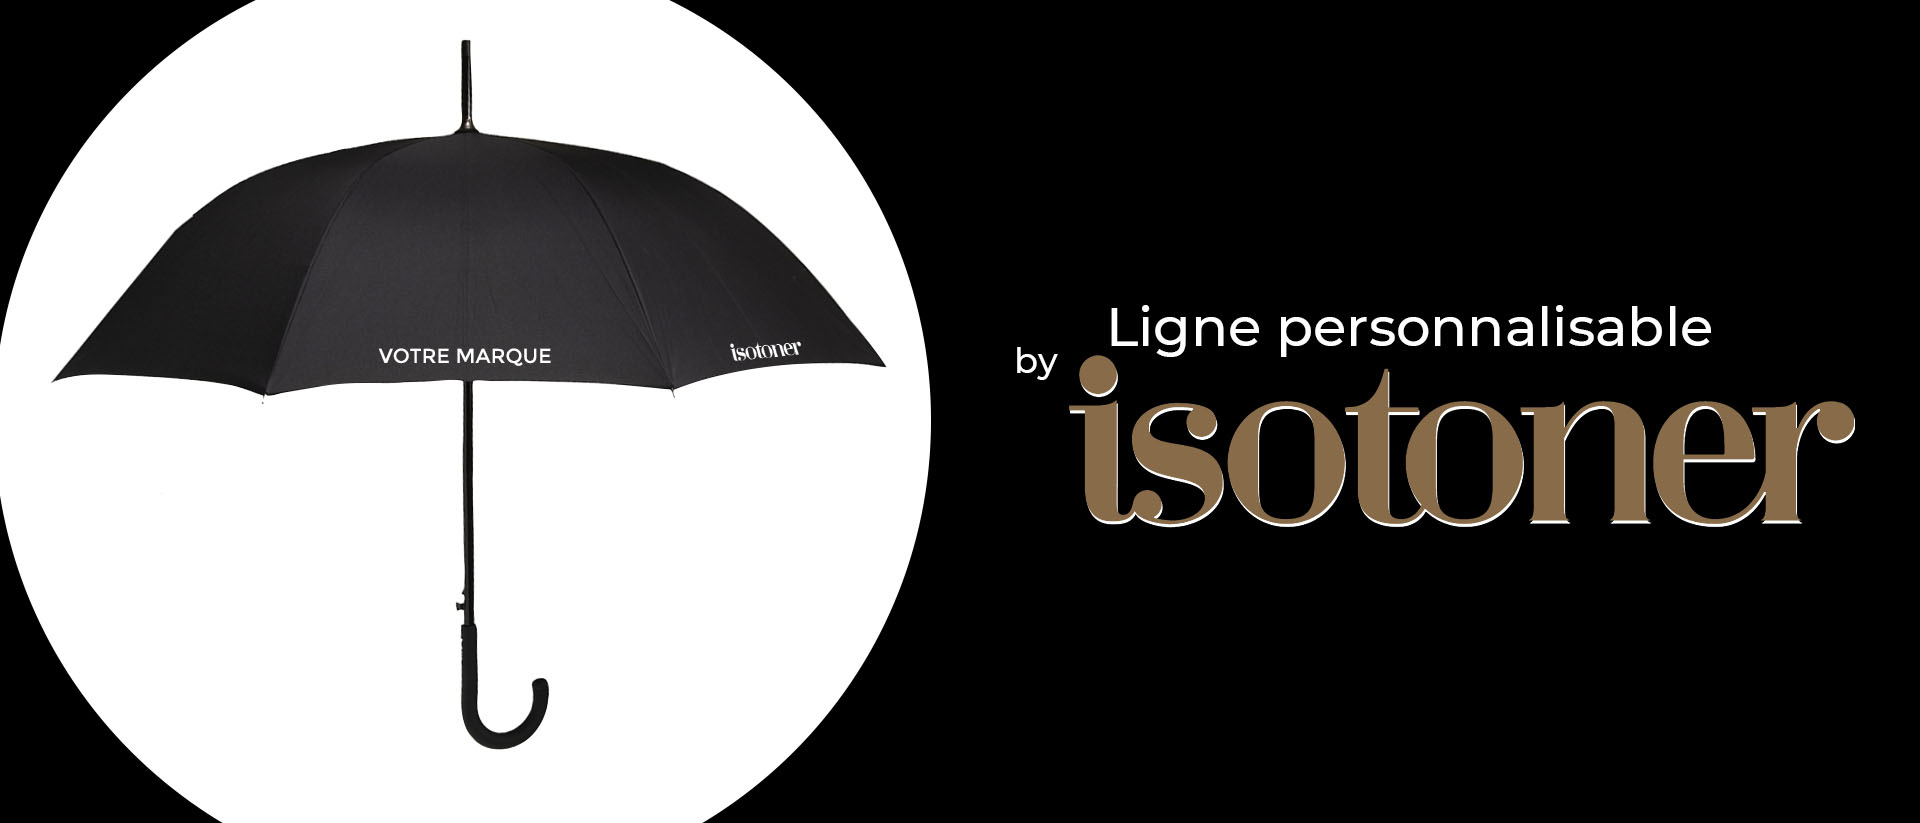 Isotoner officiel  Chaussons, parapluies, gants, chaussures confort –